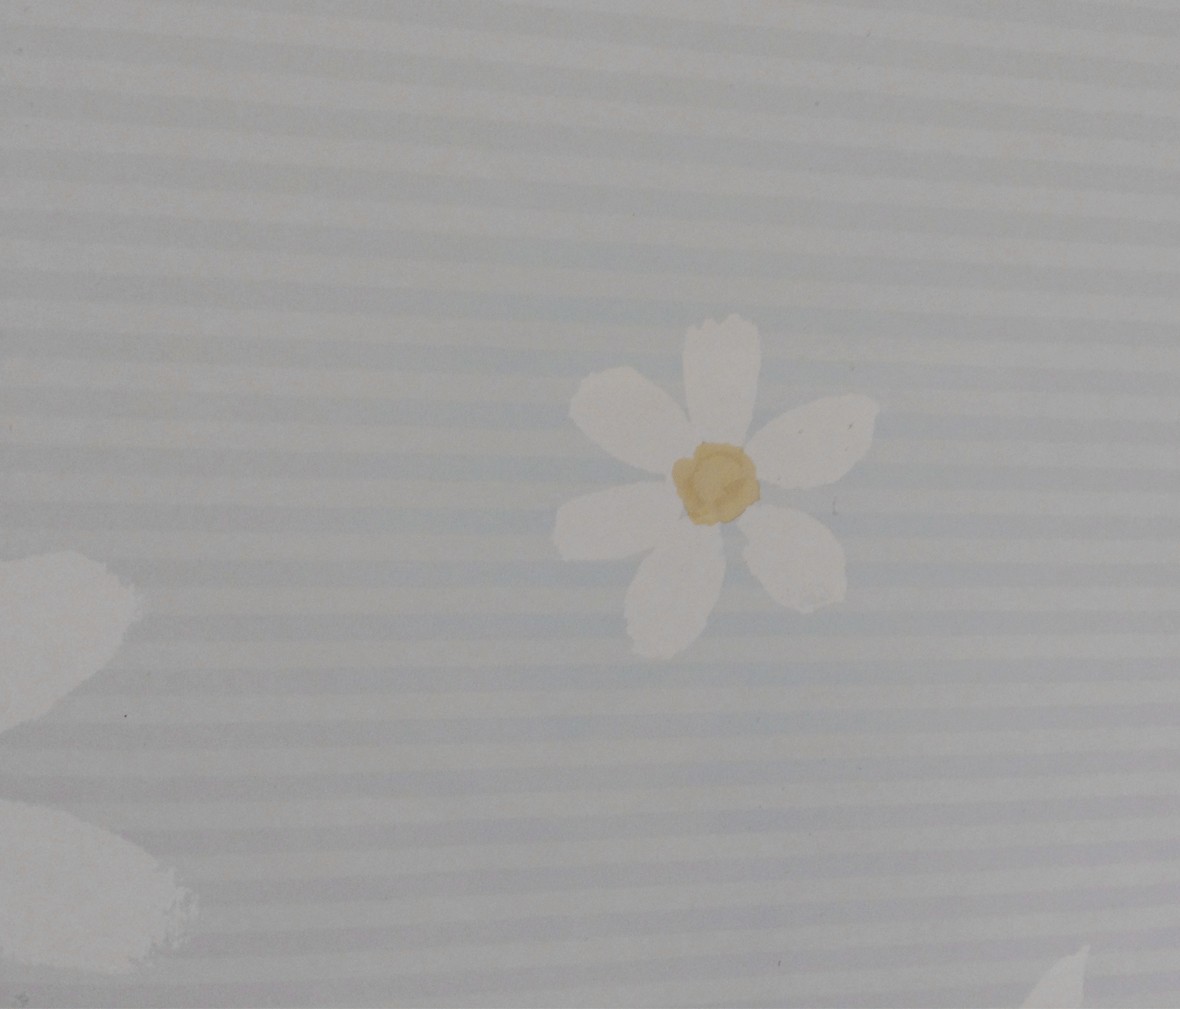 格莱美壁纸 梦想乐园系列 KJ52104型号 进口环保纯纸墙纸 单品展示